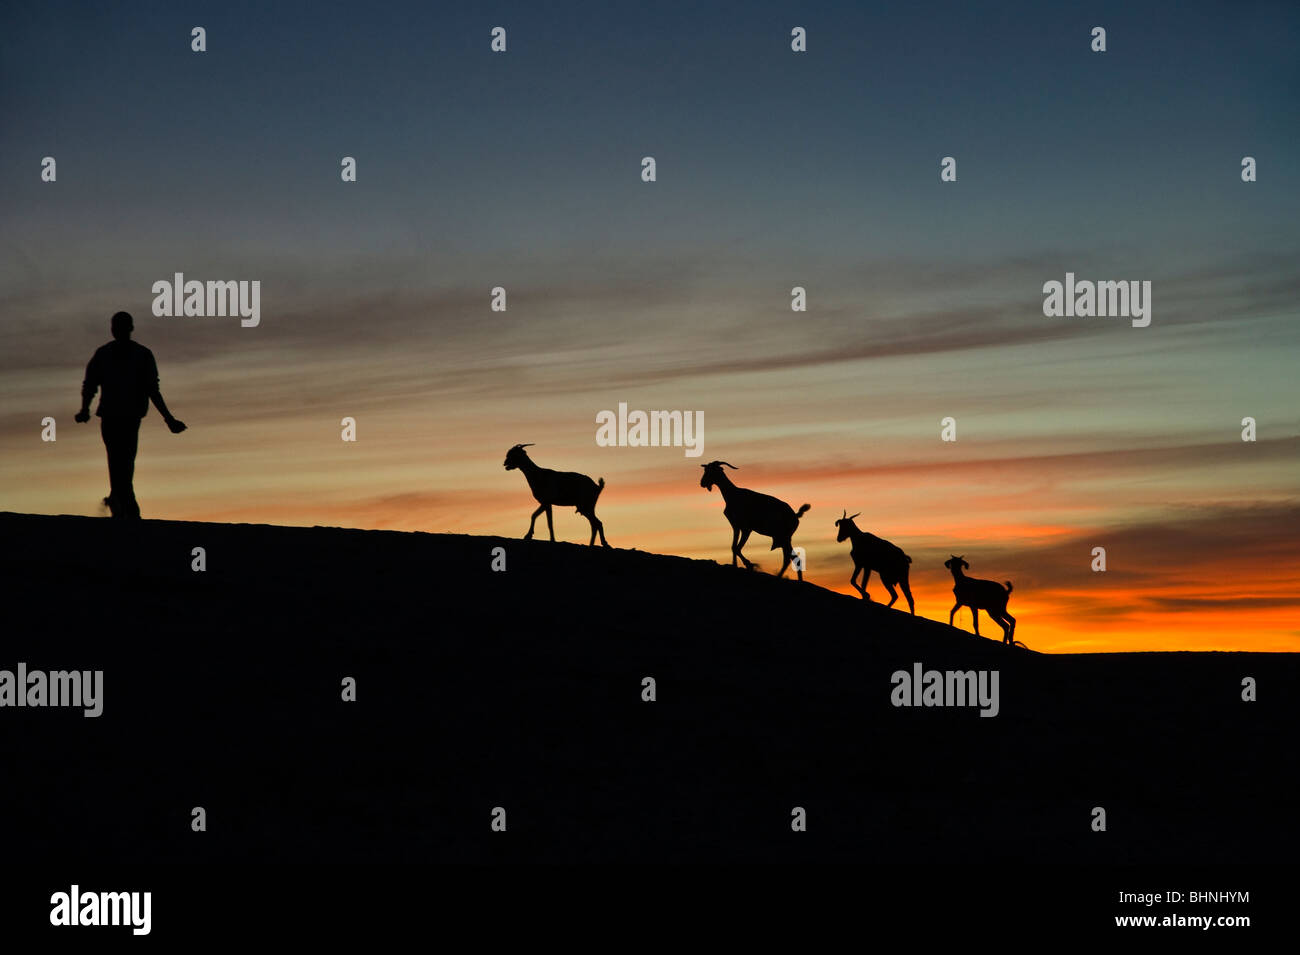 Silhouette der vier Ziegen und Ziegenhirten, gegen tieforange Sonnenuntergang Himmel in der Wüste Sahara Stockfoto